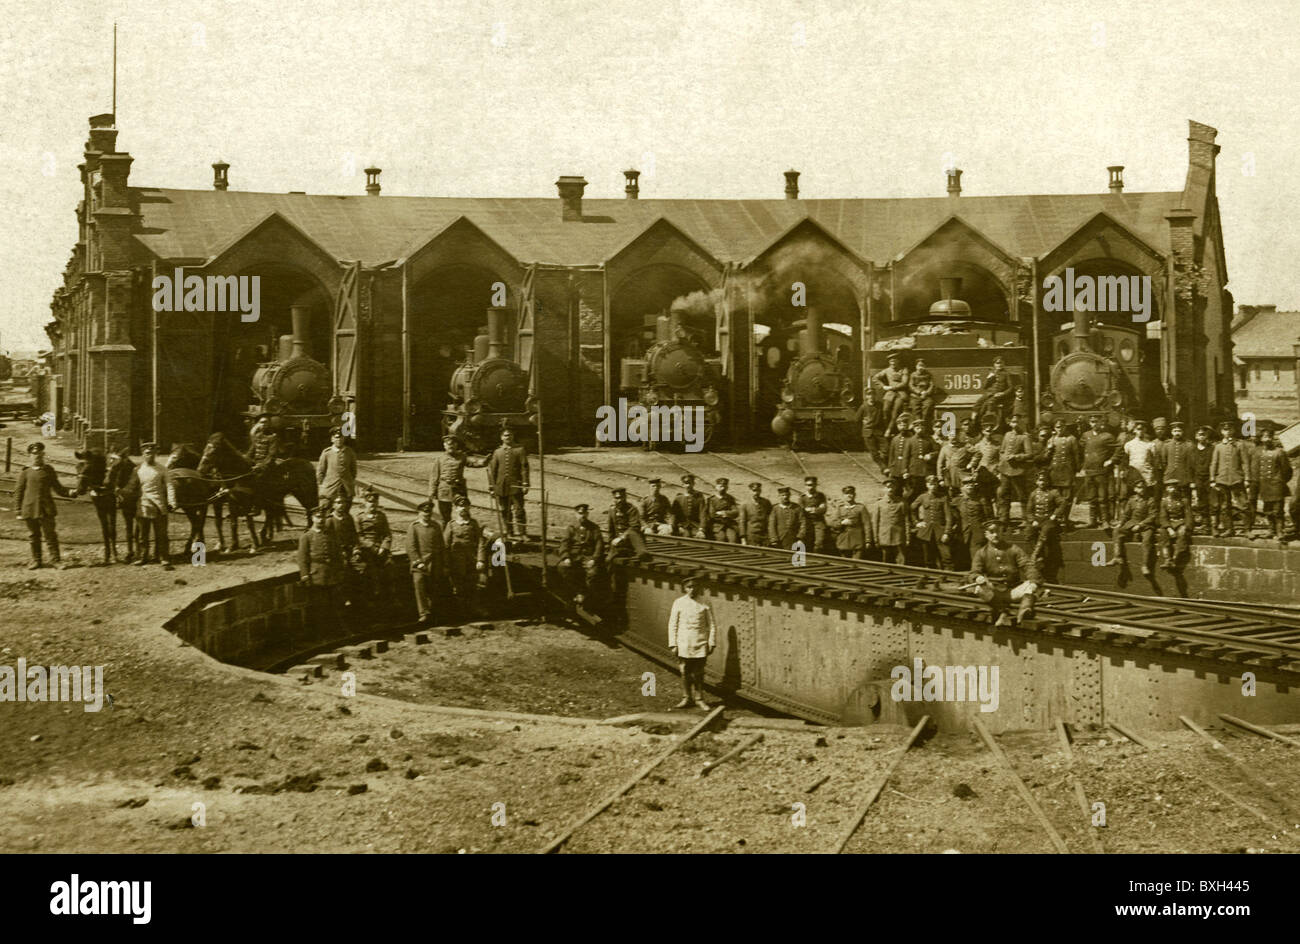 Transport / transport, chemin de fer, chemin de fer tournant, hangar de moteur, Koenigsberg, Allemagne, vers 1900, droits additionnels-Clearences-non disponible Banque D'Images